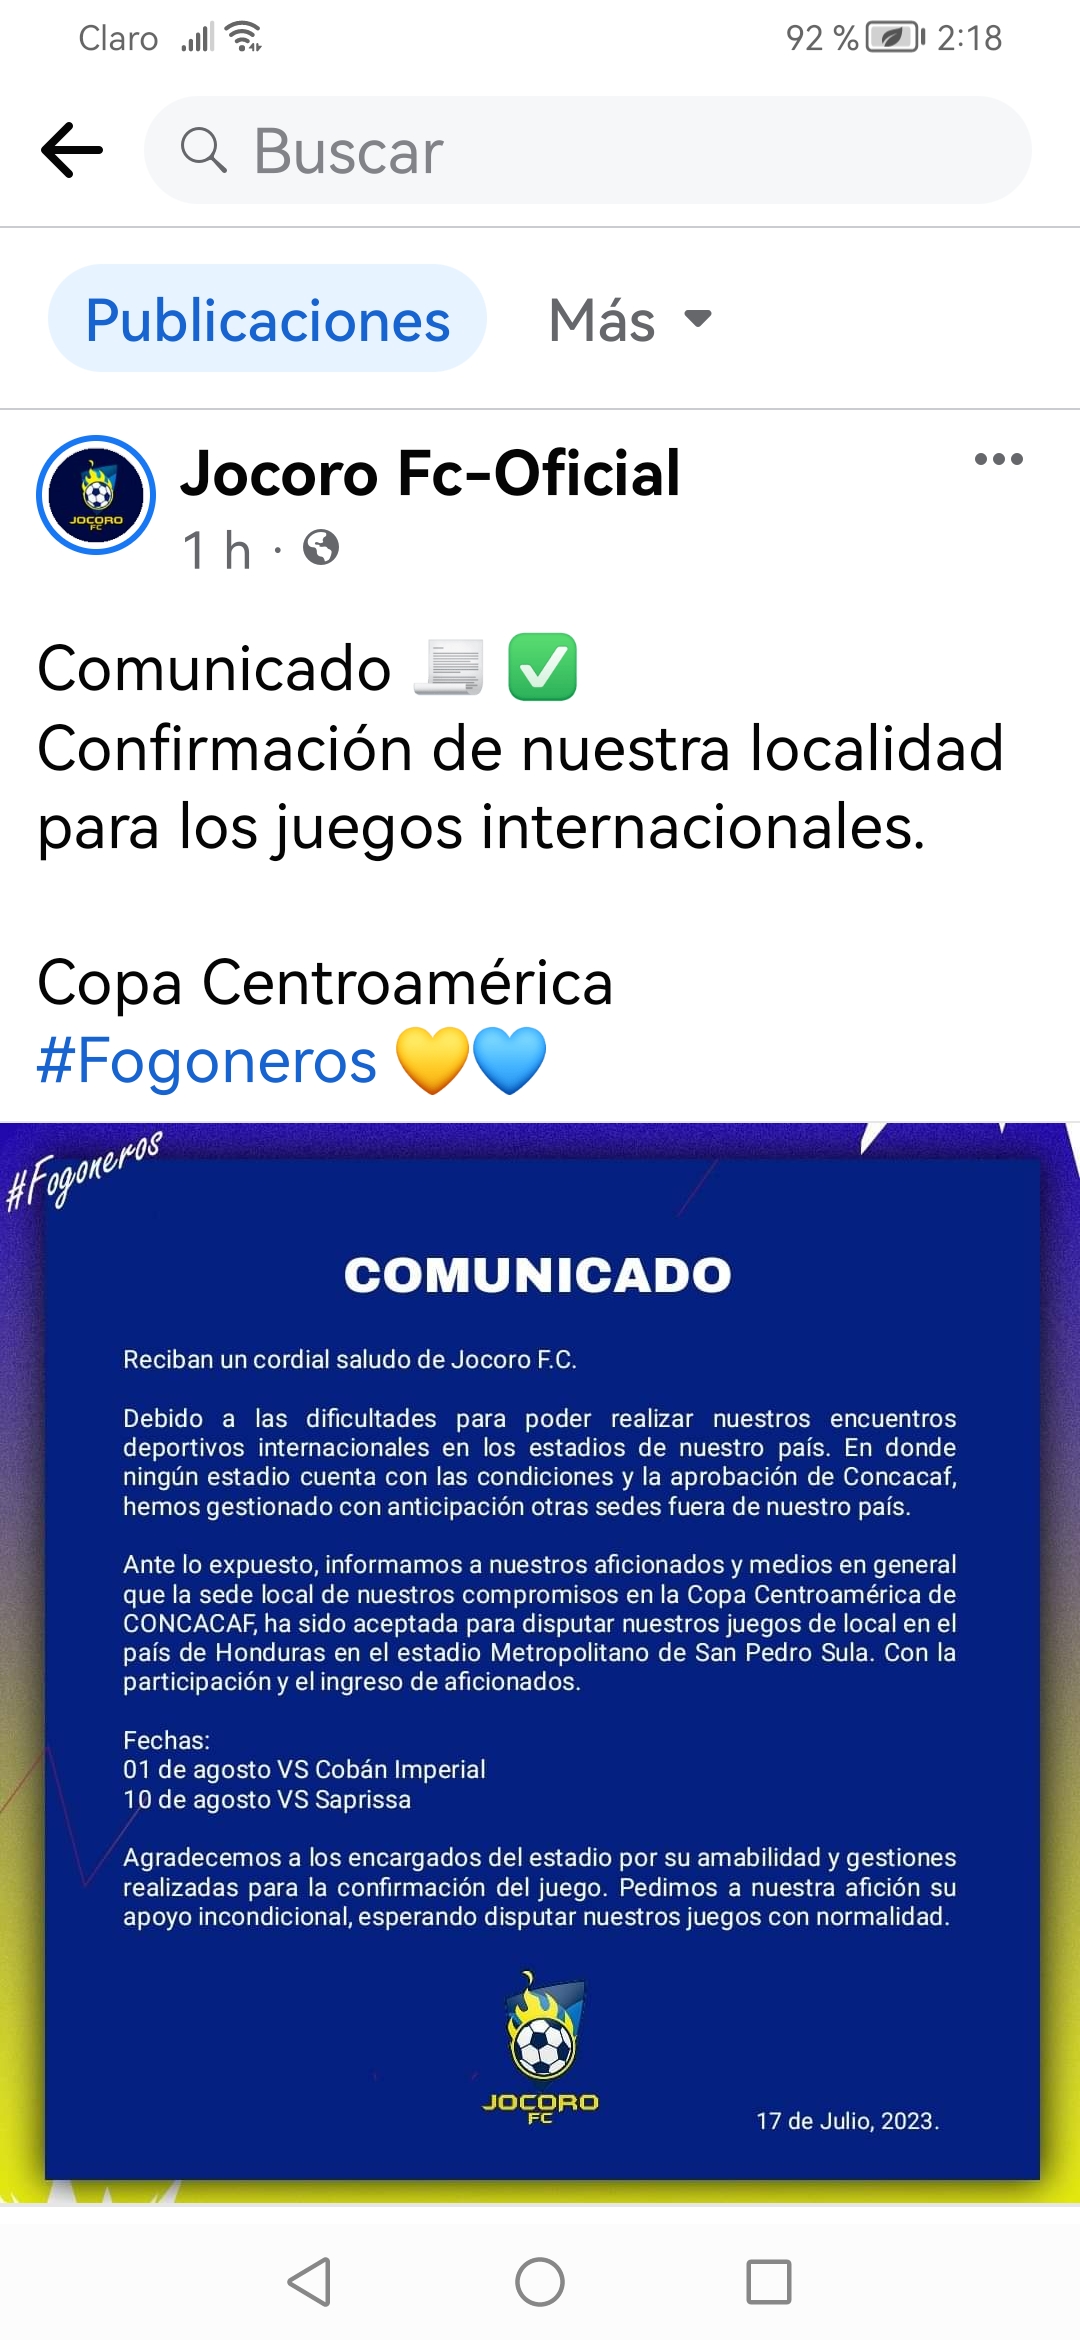 Este es el comunicado emitido por el equipo Jocoro FC de El Salvador.